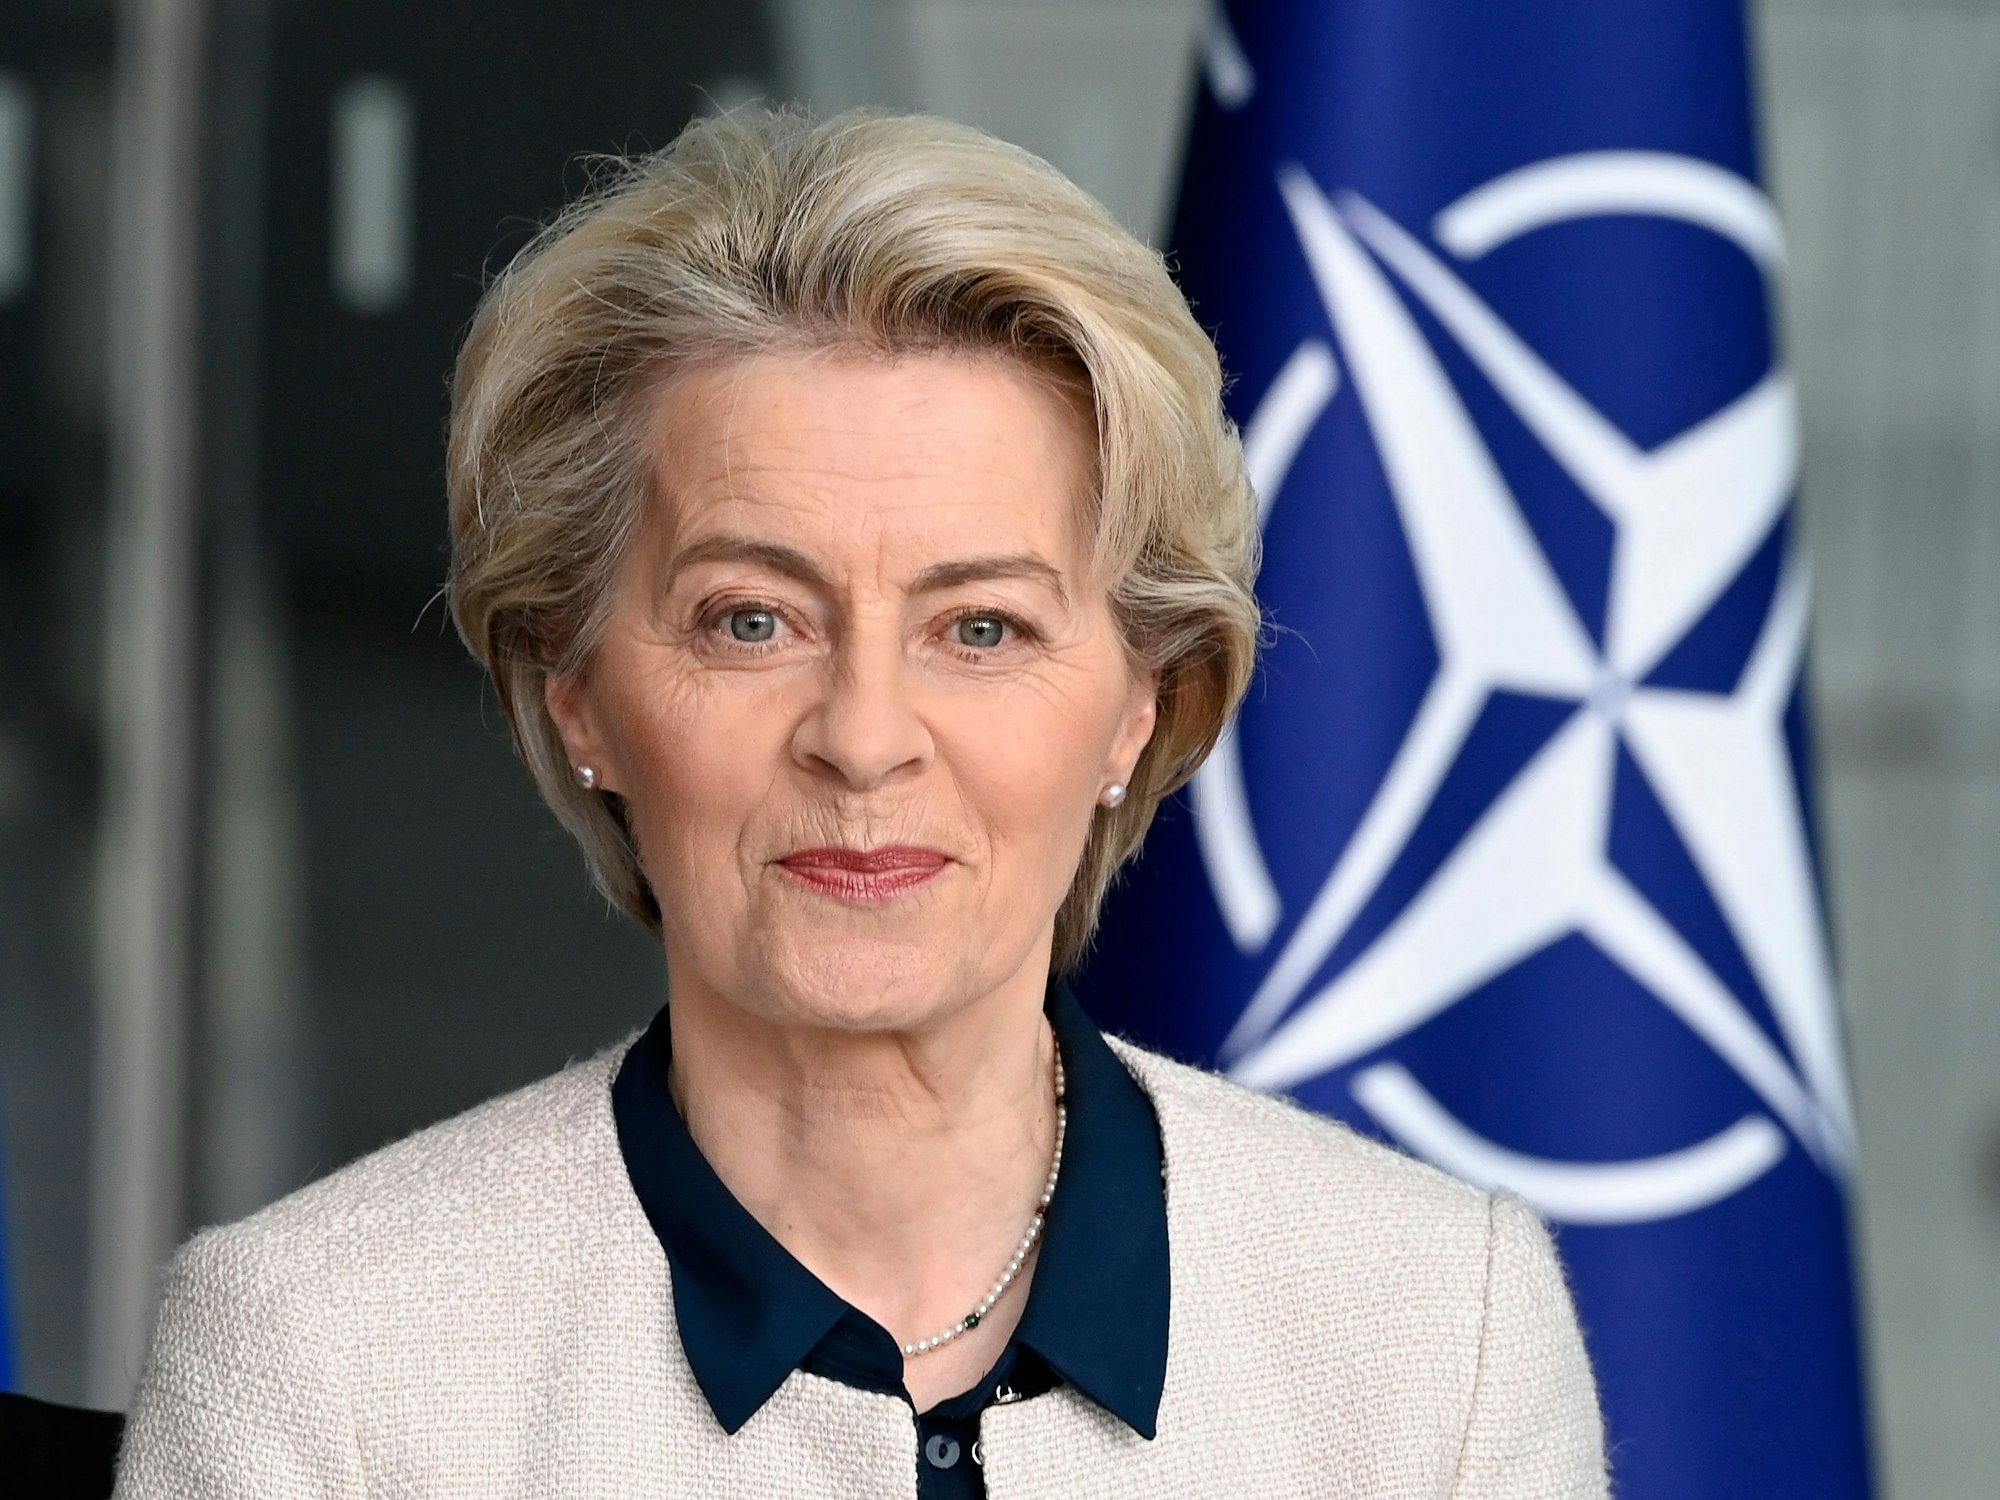 Die ehemalige Verteidigungsministerin Ursula von der Leyen (CDU), lächelt nach der Unterzeichnung einer gemeinsamen Erklärung zur Zusammenarbeit in strategischen Bereichen zwischen der NATO und der EU im NATO-Hauptquartier in Brüssel im Januar 2023 in die Kamera. Amtszeit: 17. Dezember 2013 bis 17. Juli 2019.